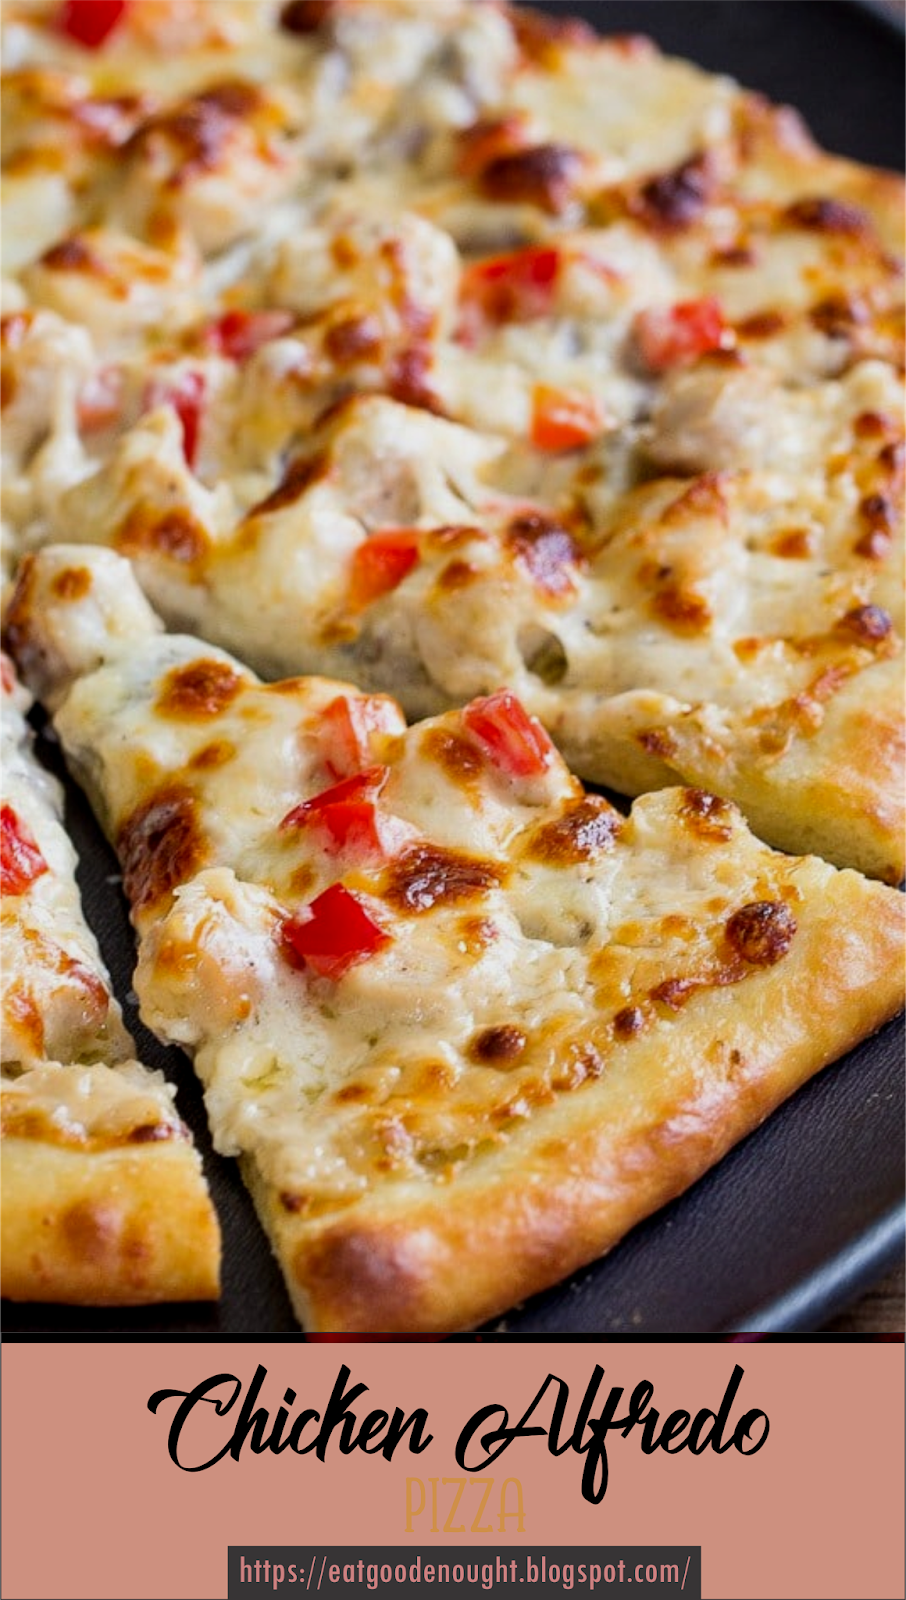 пицца рецепты с фото простые и вкусные пошаговые фото 100